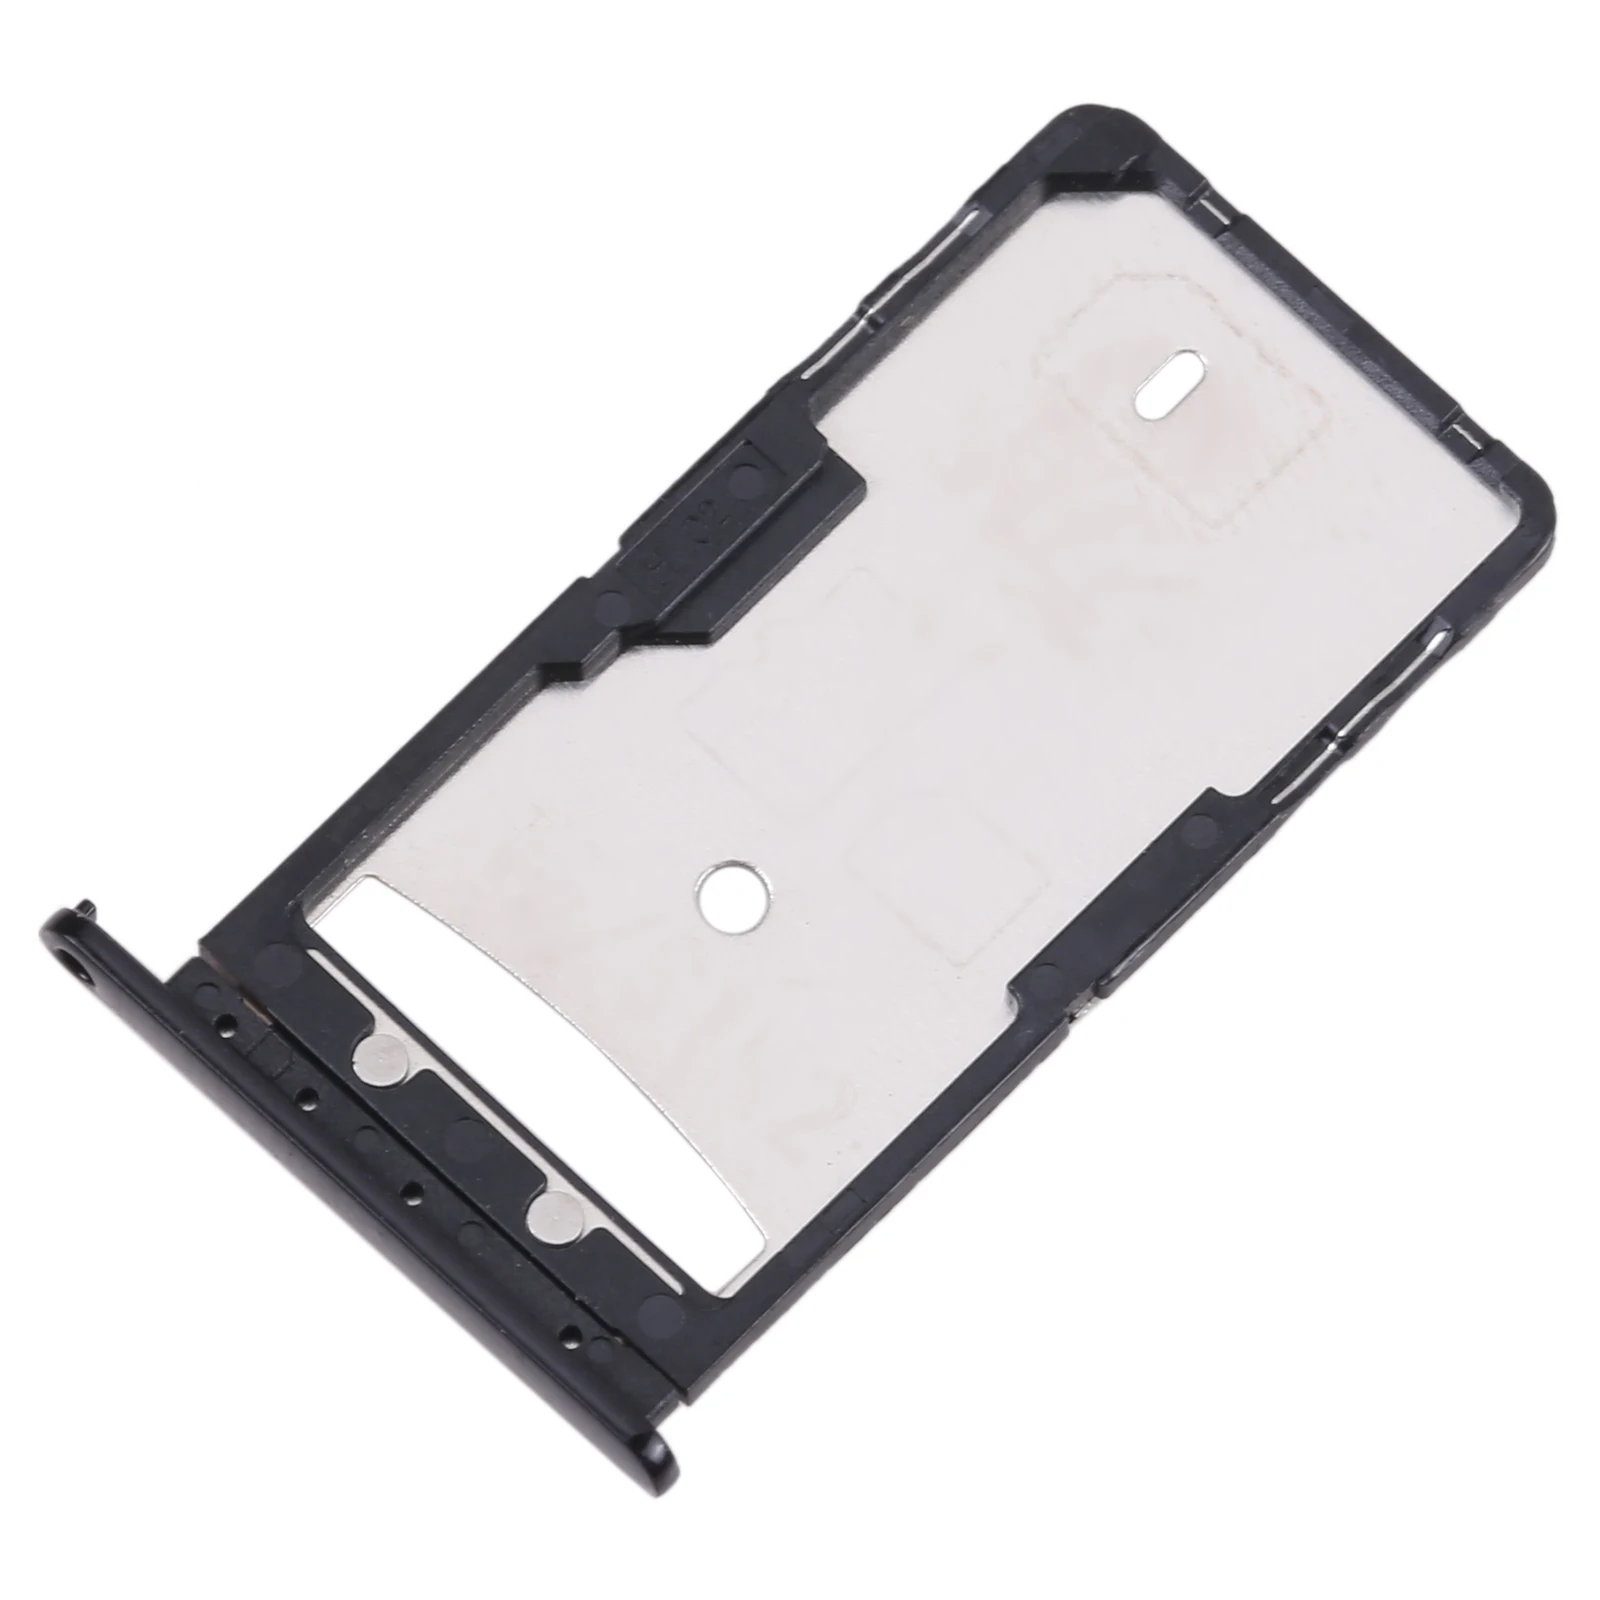 Carte électronique noire pour Lenovo, compatible avec les modèles K10 Note / Z6 Youth L38111